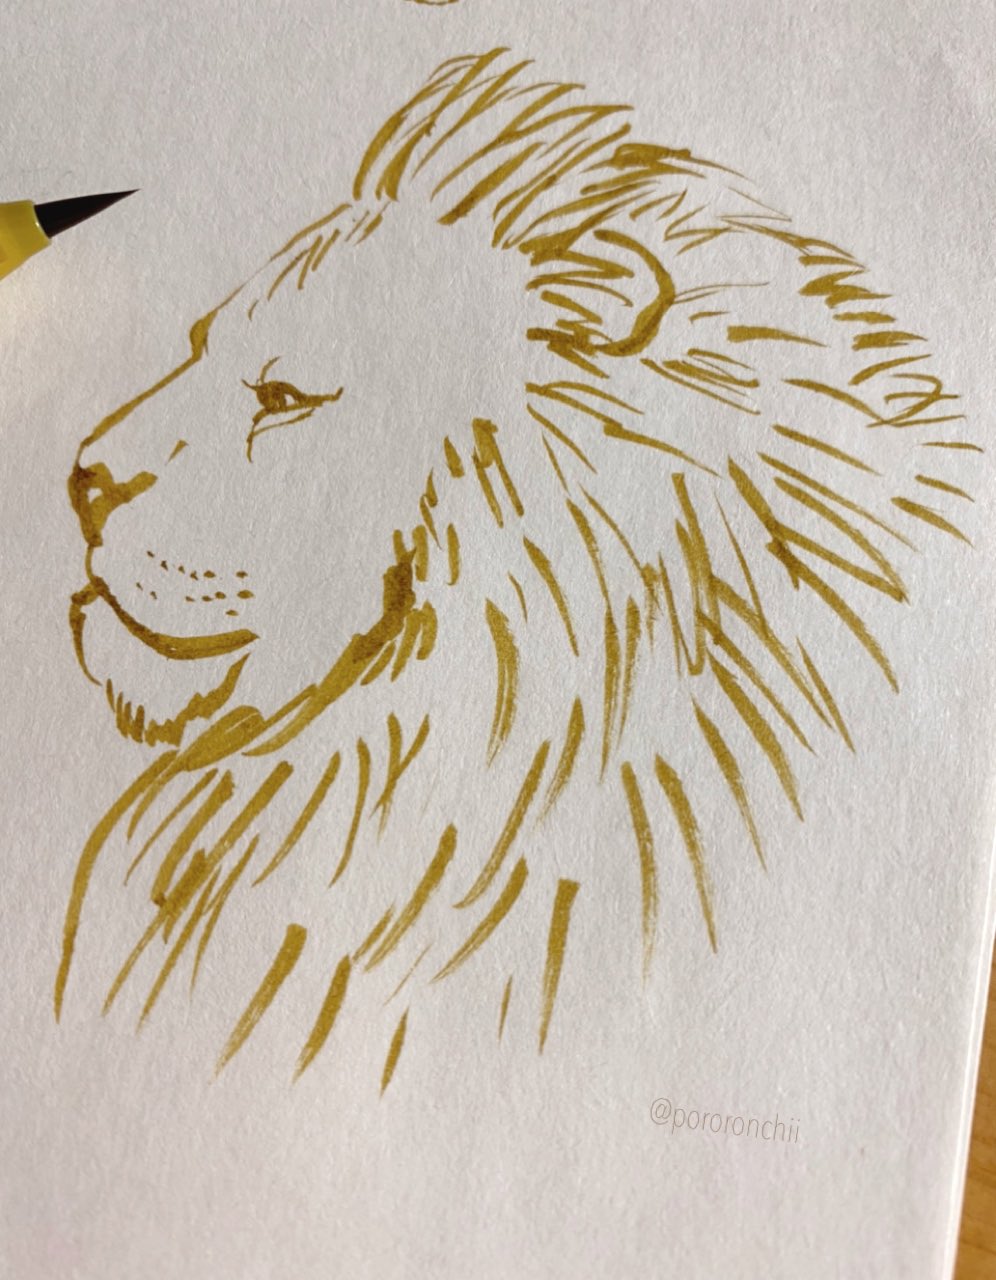 たかはし ちひろ ライオンの横顔描いてみた ライオン らくがき イラスト Illustration Lion Animal T Co Y3vhgmpc8b Twitter